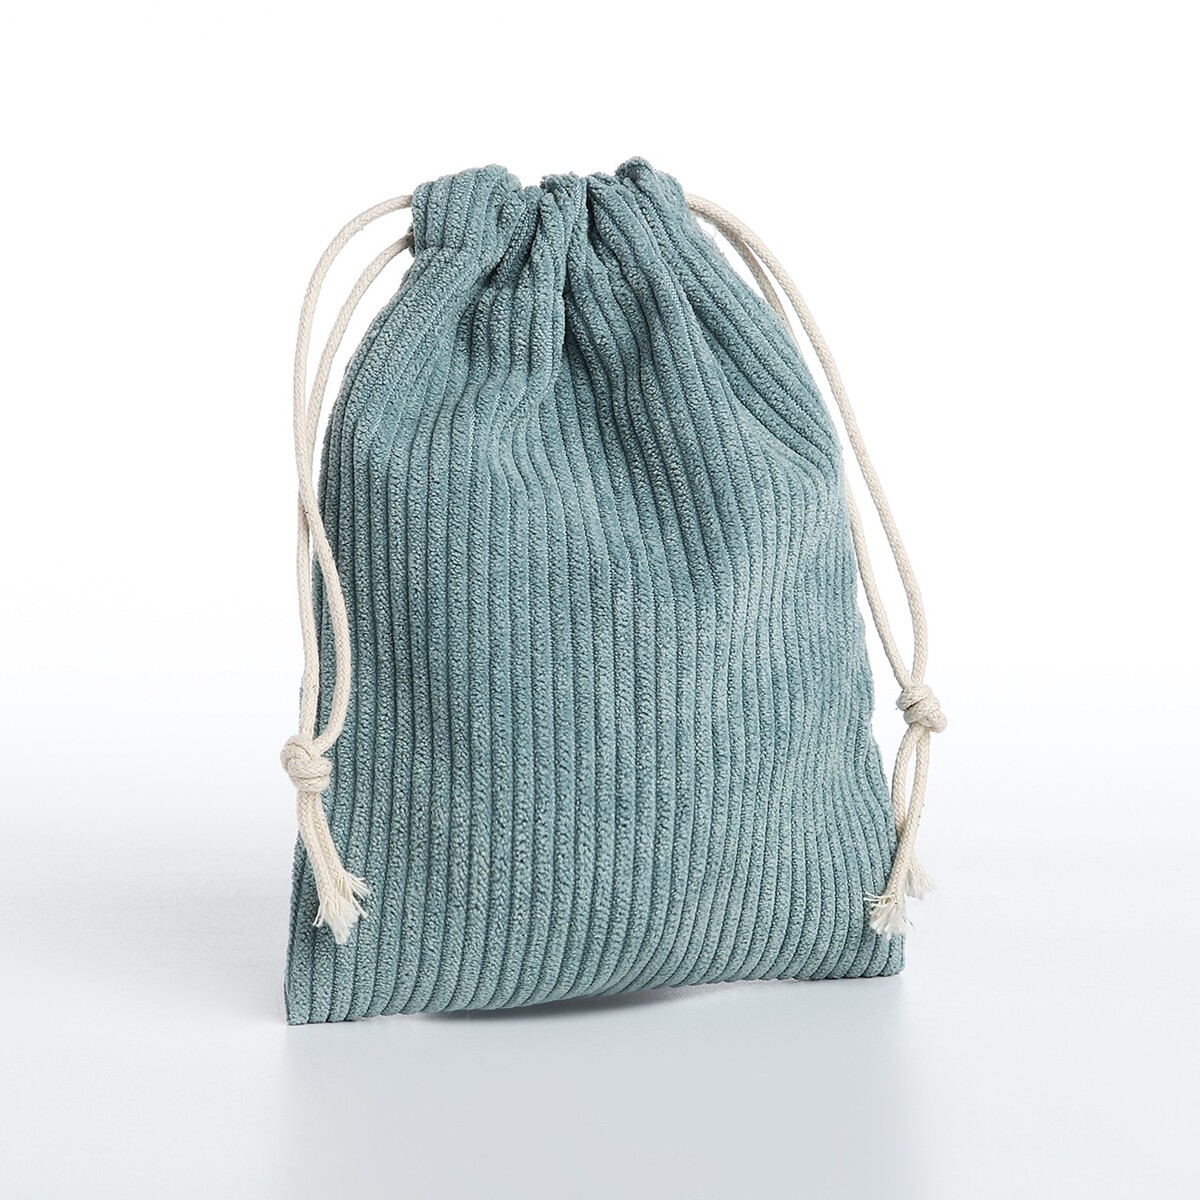 Косметичка - мешок с завязками, цвет голубой косметичка мешок с завязками горчичный